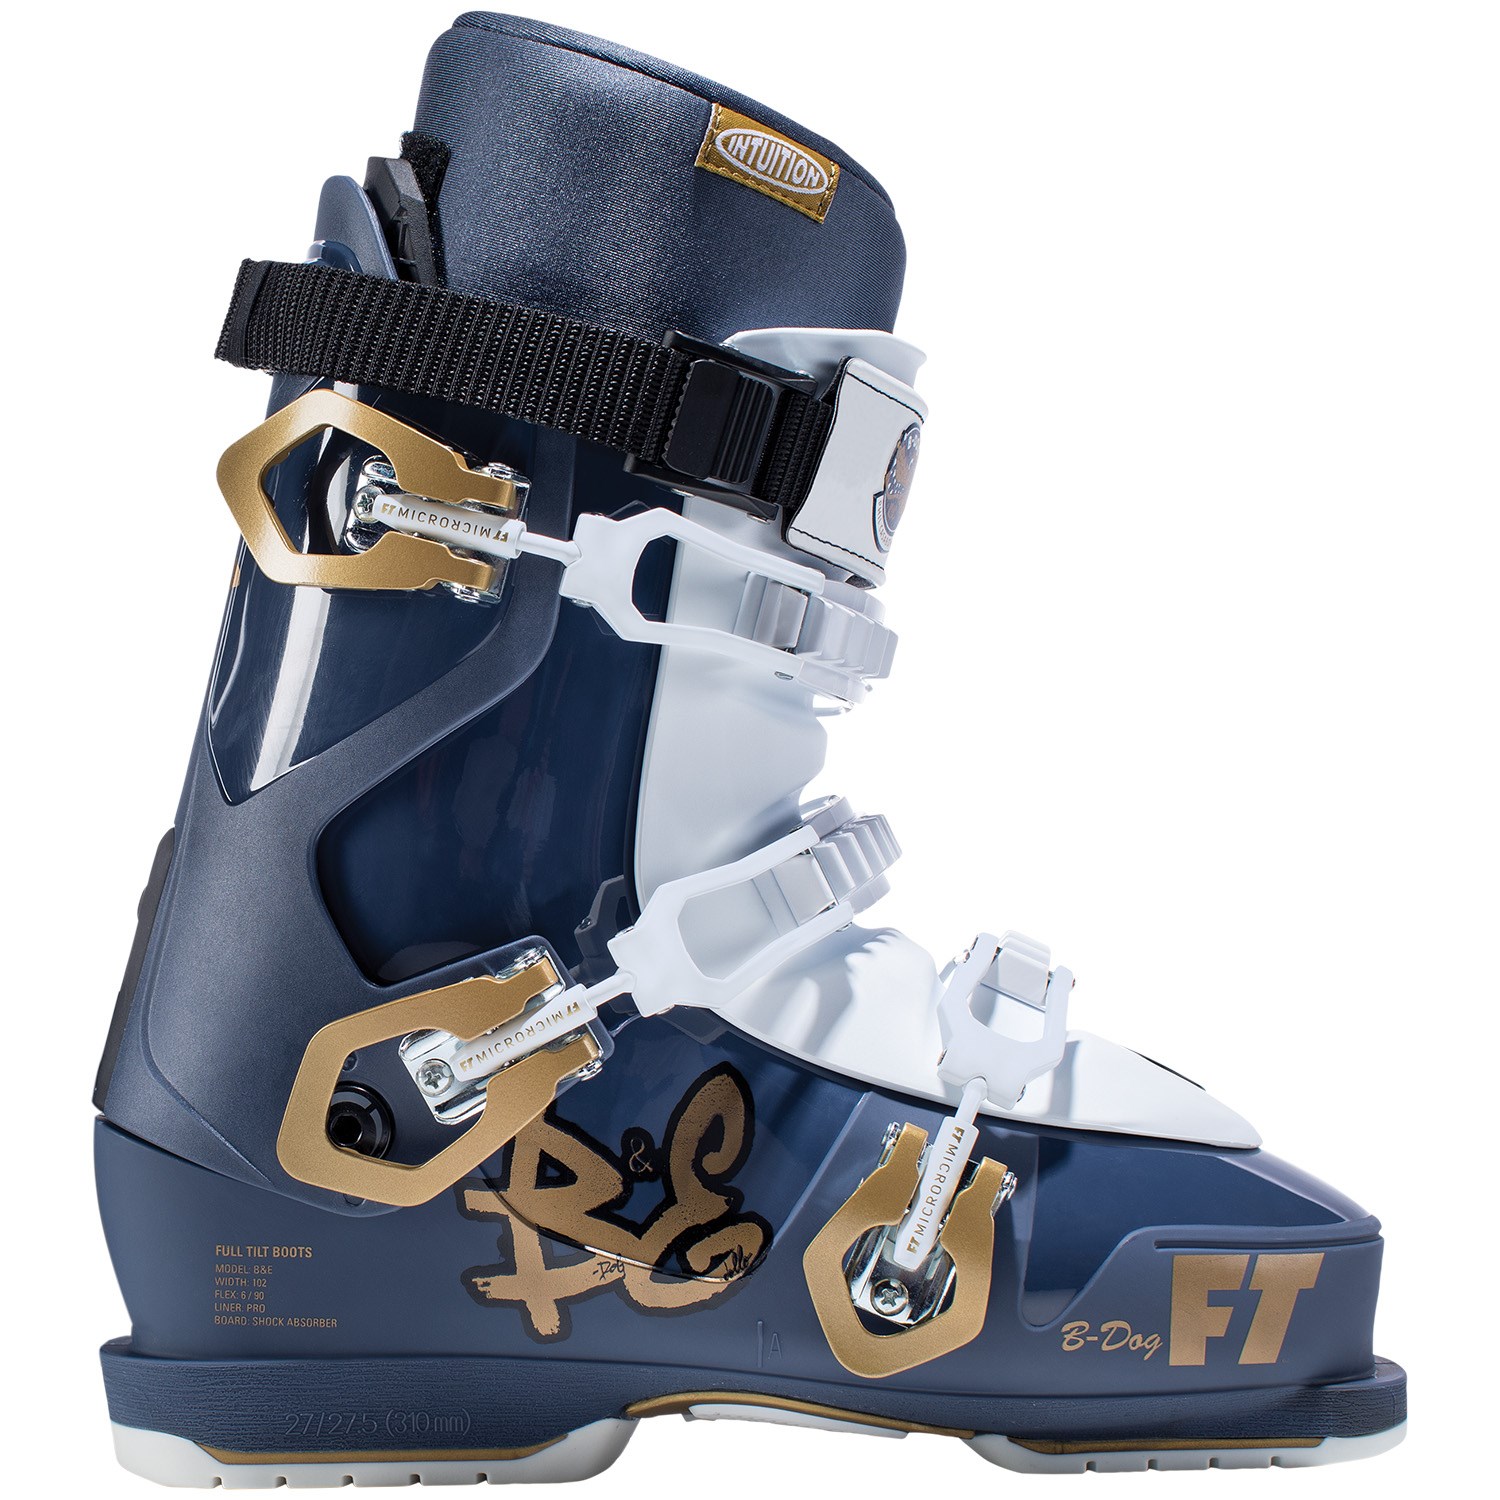 Full Tilt B&E Pro Ltd Ski Boots 2019 | evo